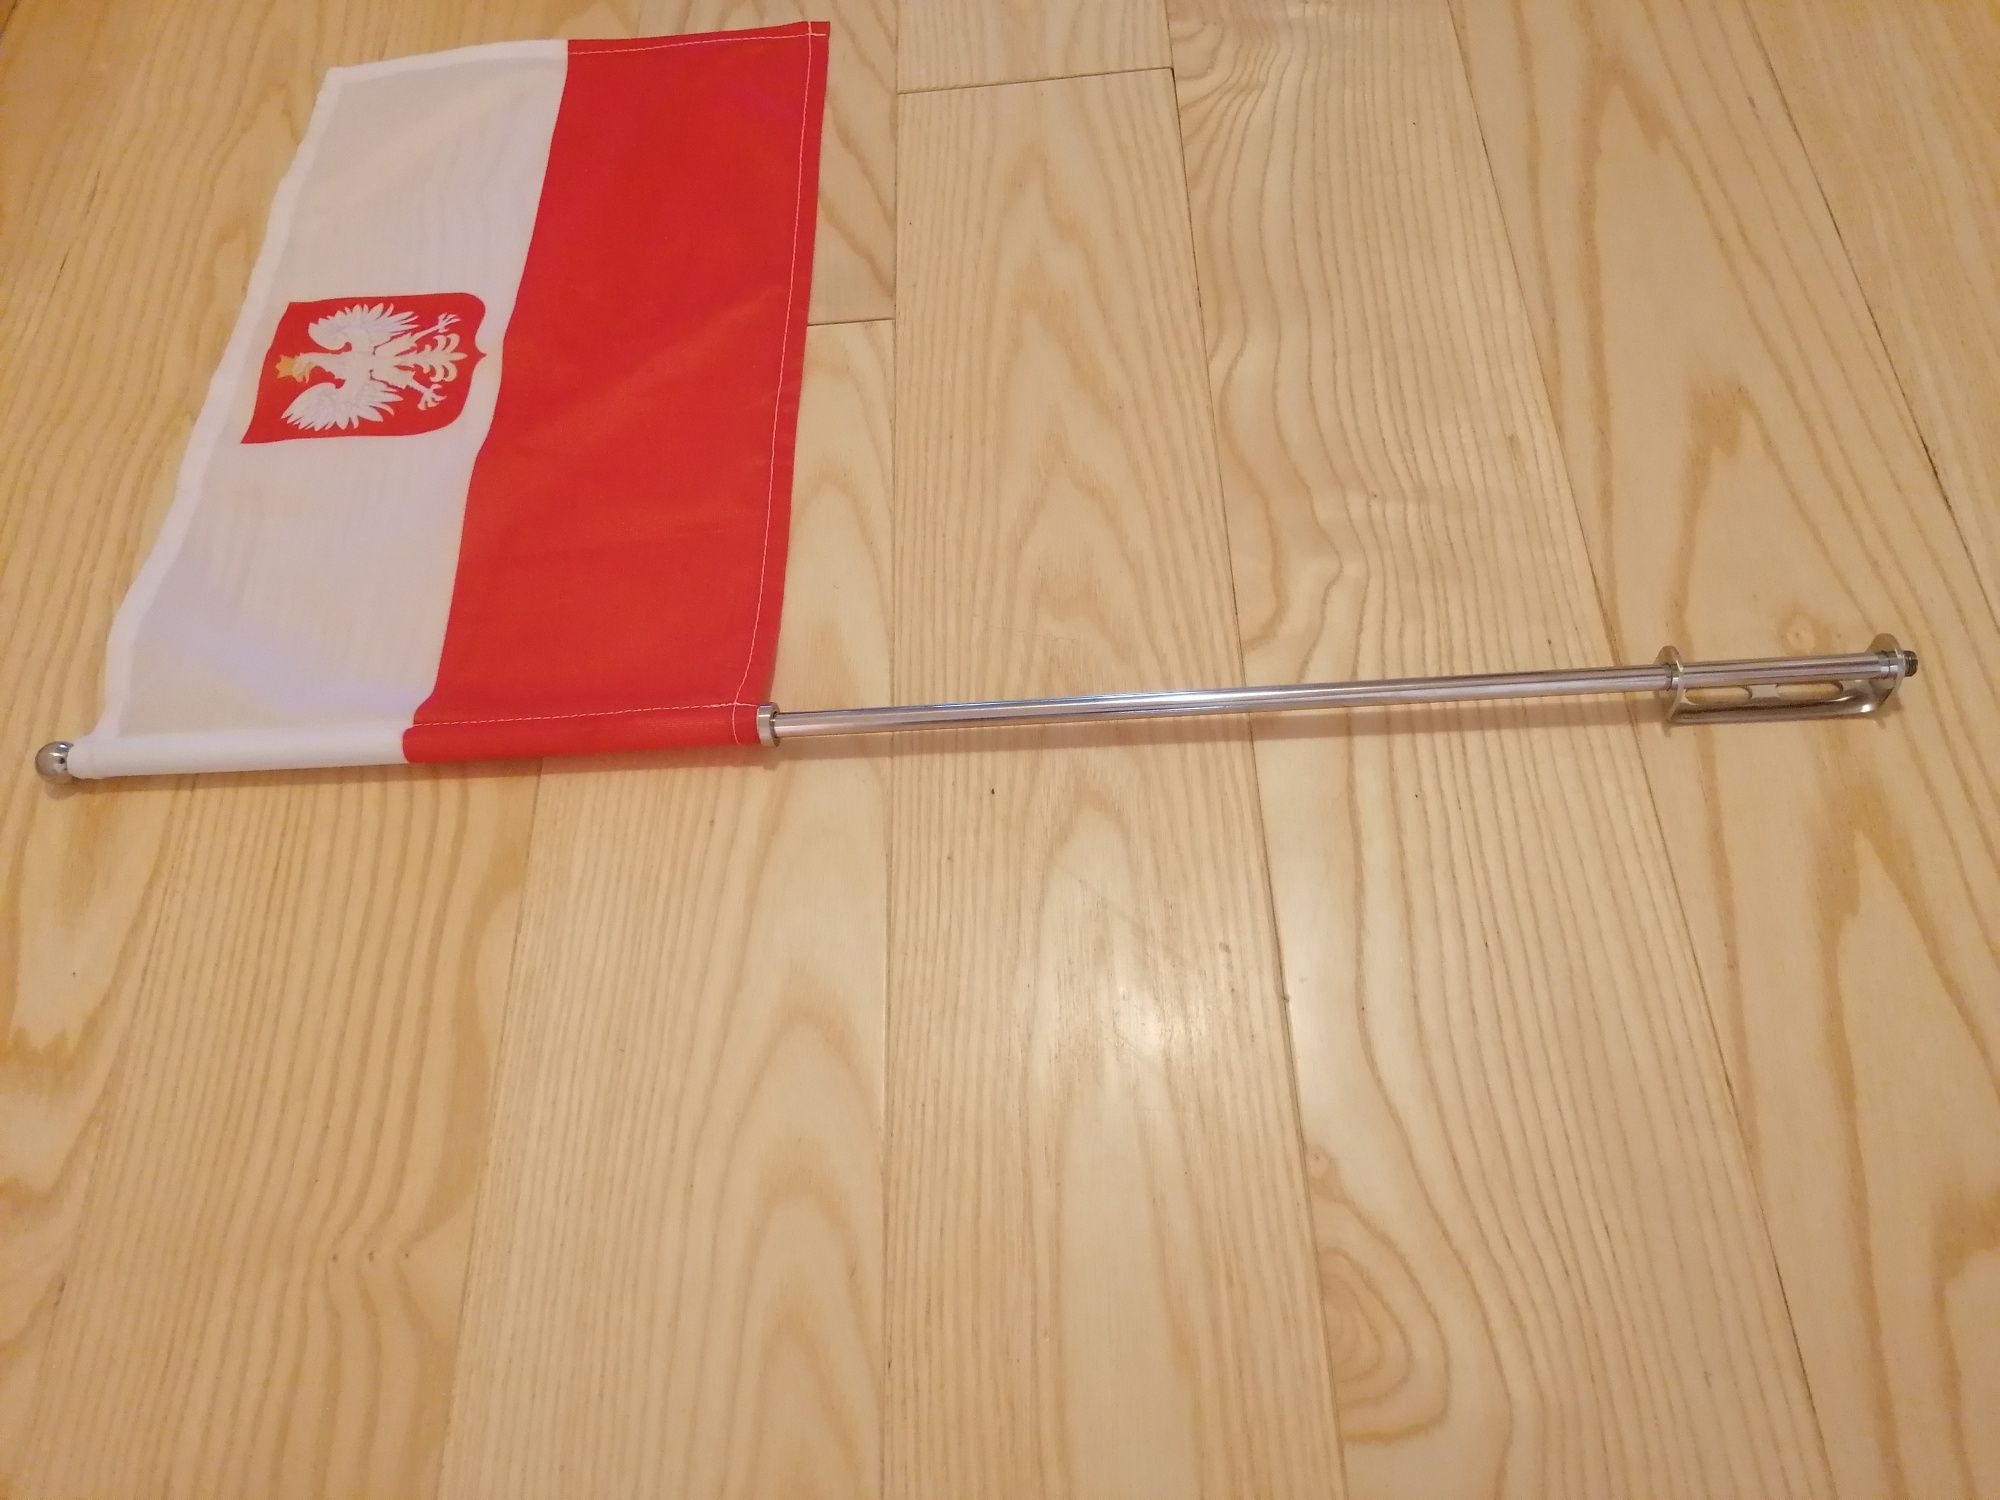 Maszt z flaga Polski Chopper Cruiser Trike Metal Jakość